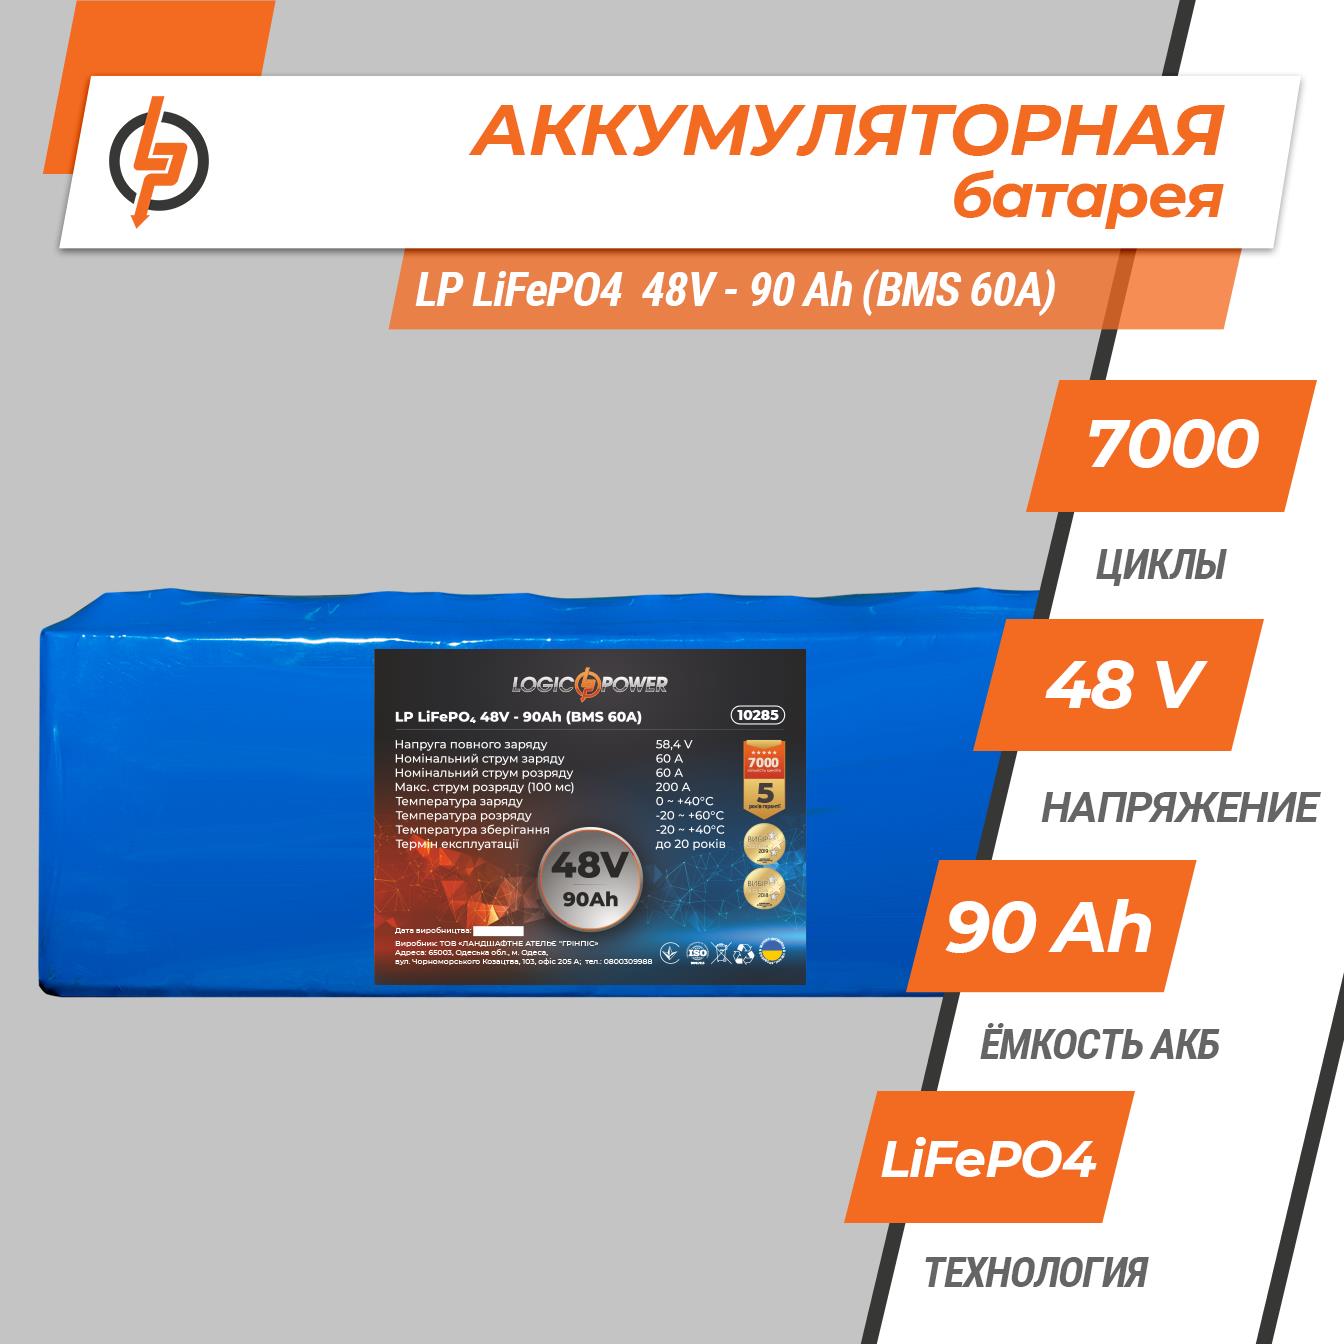 Аккумулятор литий-железо-фосфатный LogicPower LP LiFePO4 48V - 90 Ah (BMS 60A) (10285) цена 0 грн - фотография 2